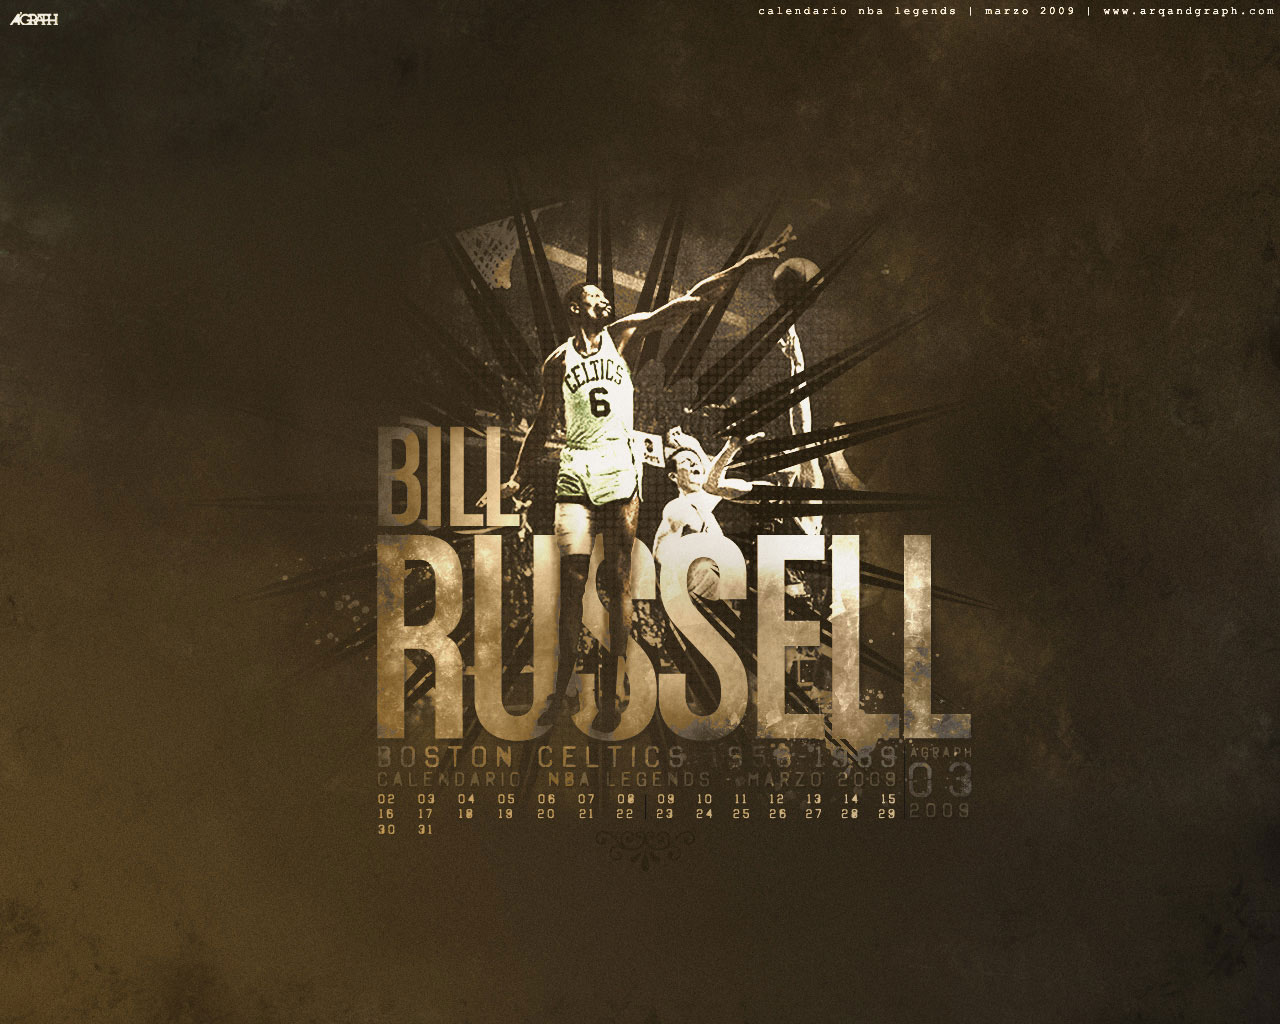 Best Basketball Wallpaper: Bill Russell Poster